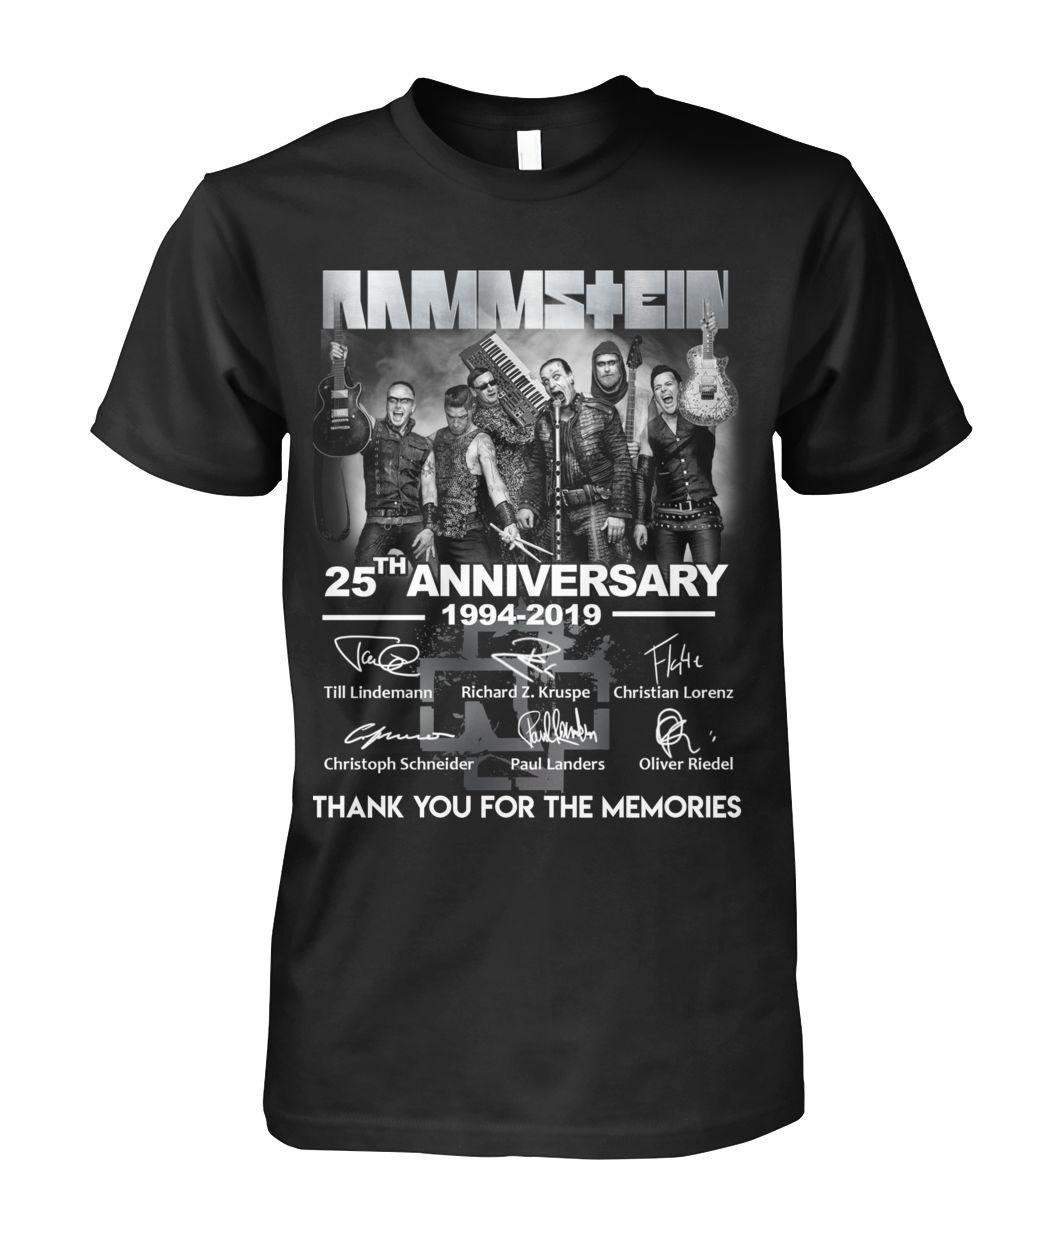 Rammstein 25th anniversary 1994 2019 classic shirt